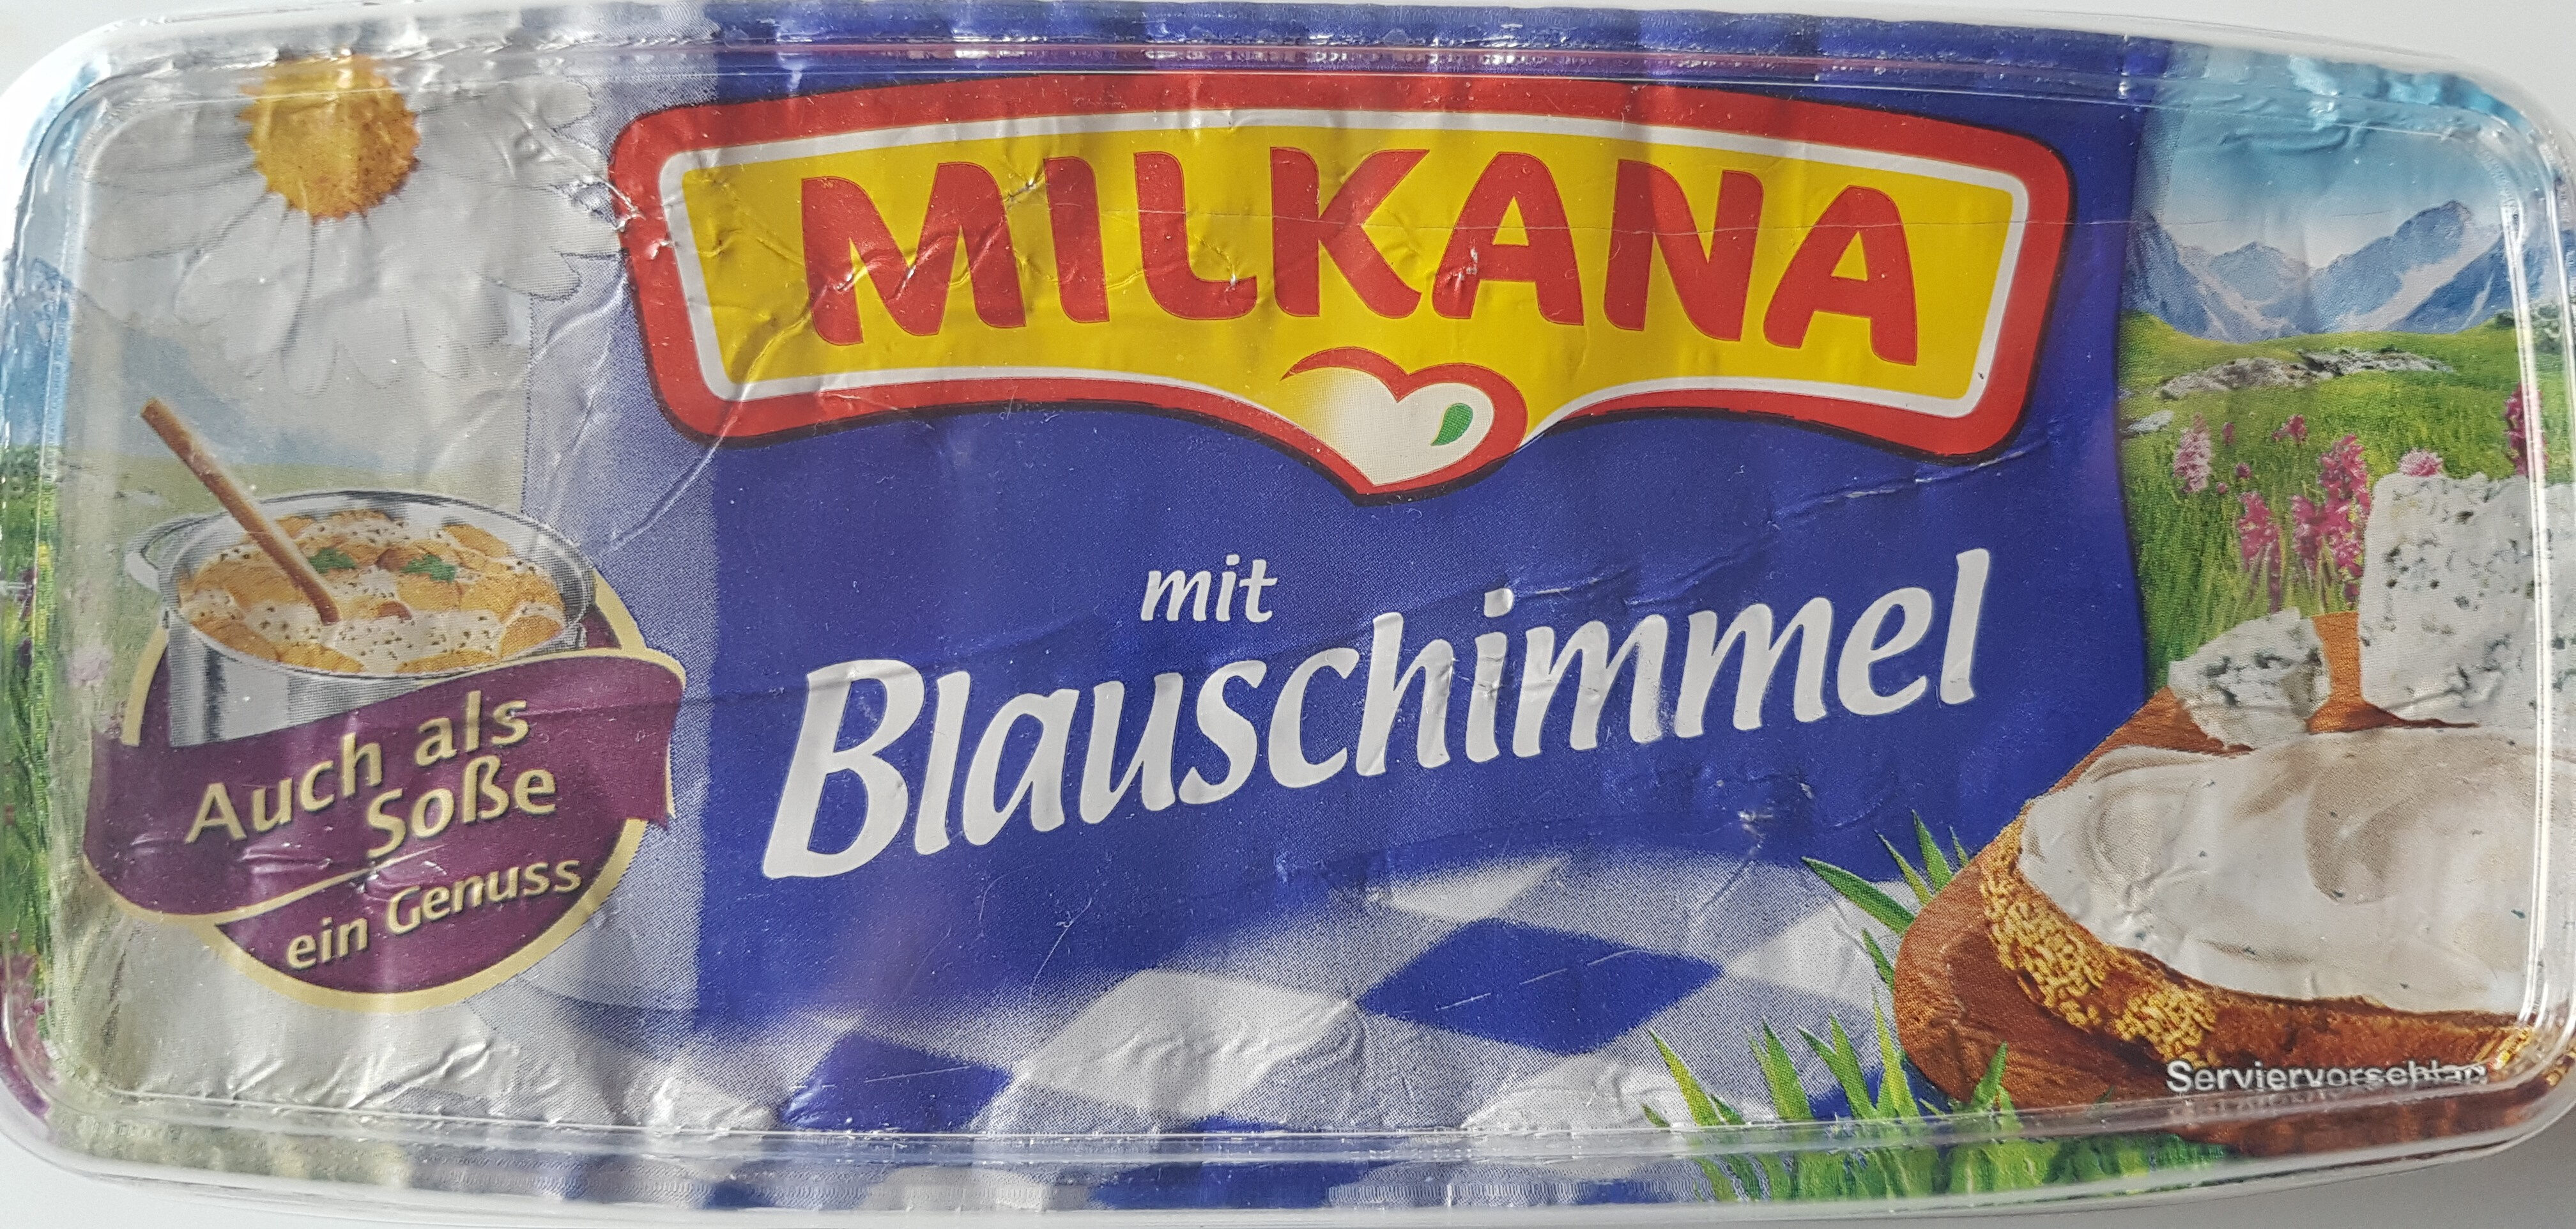 Milkana mit Blauschimmel - Produkt - de